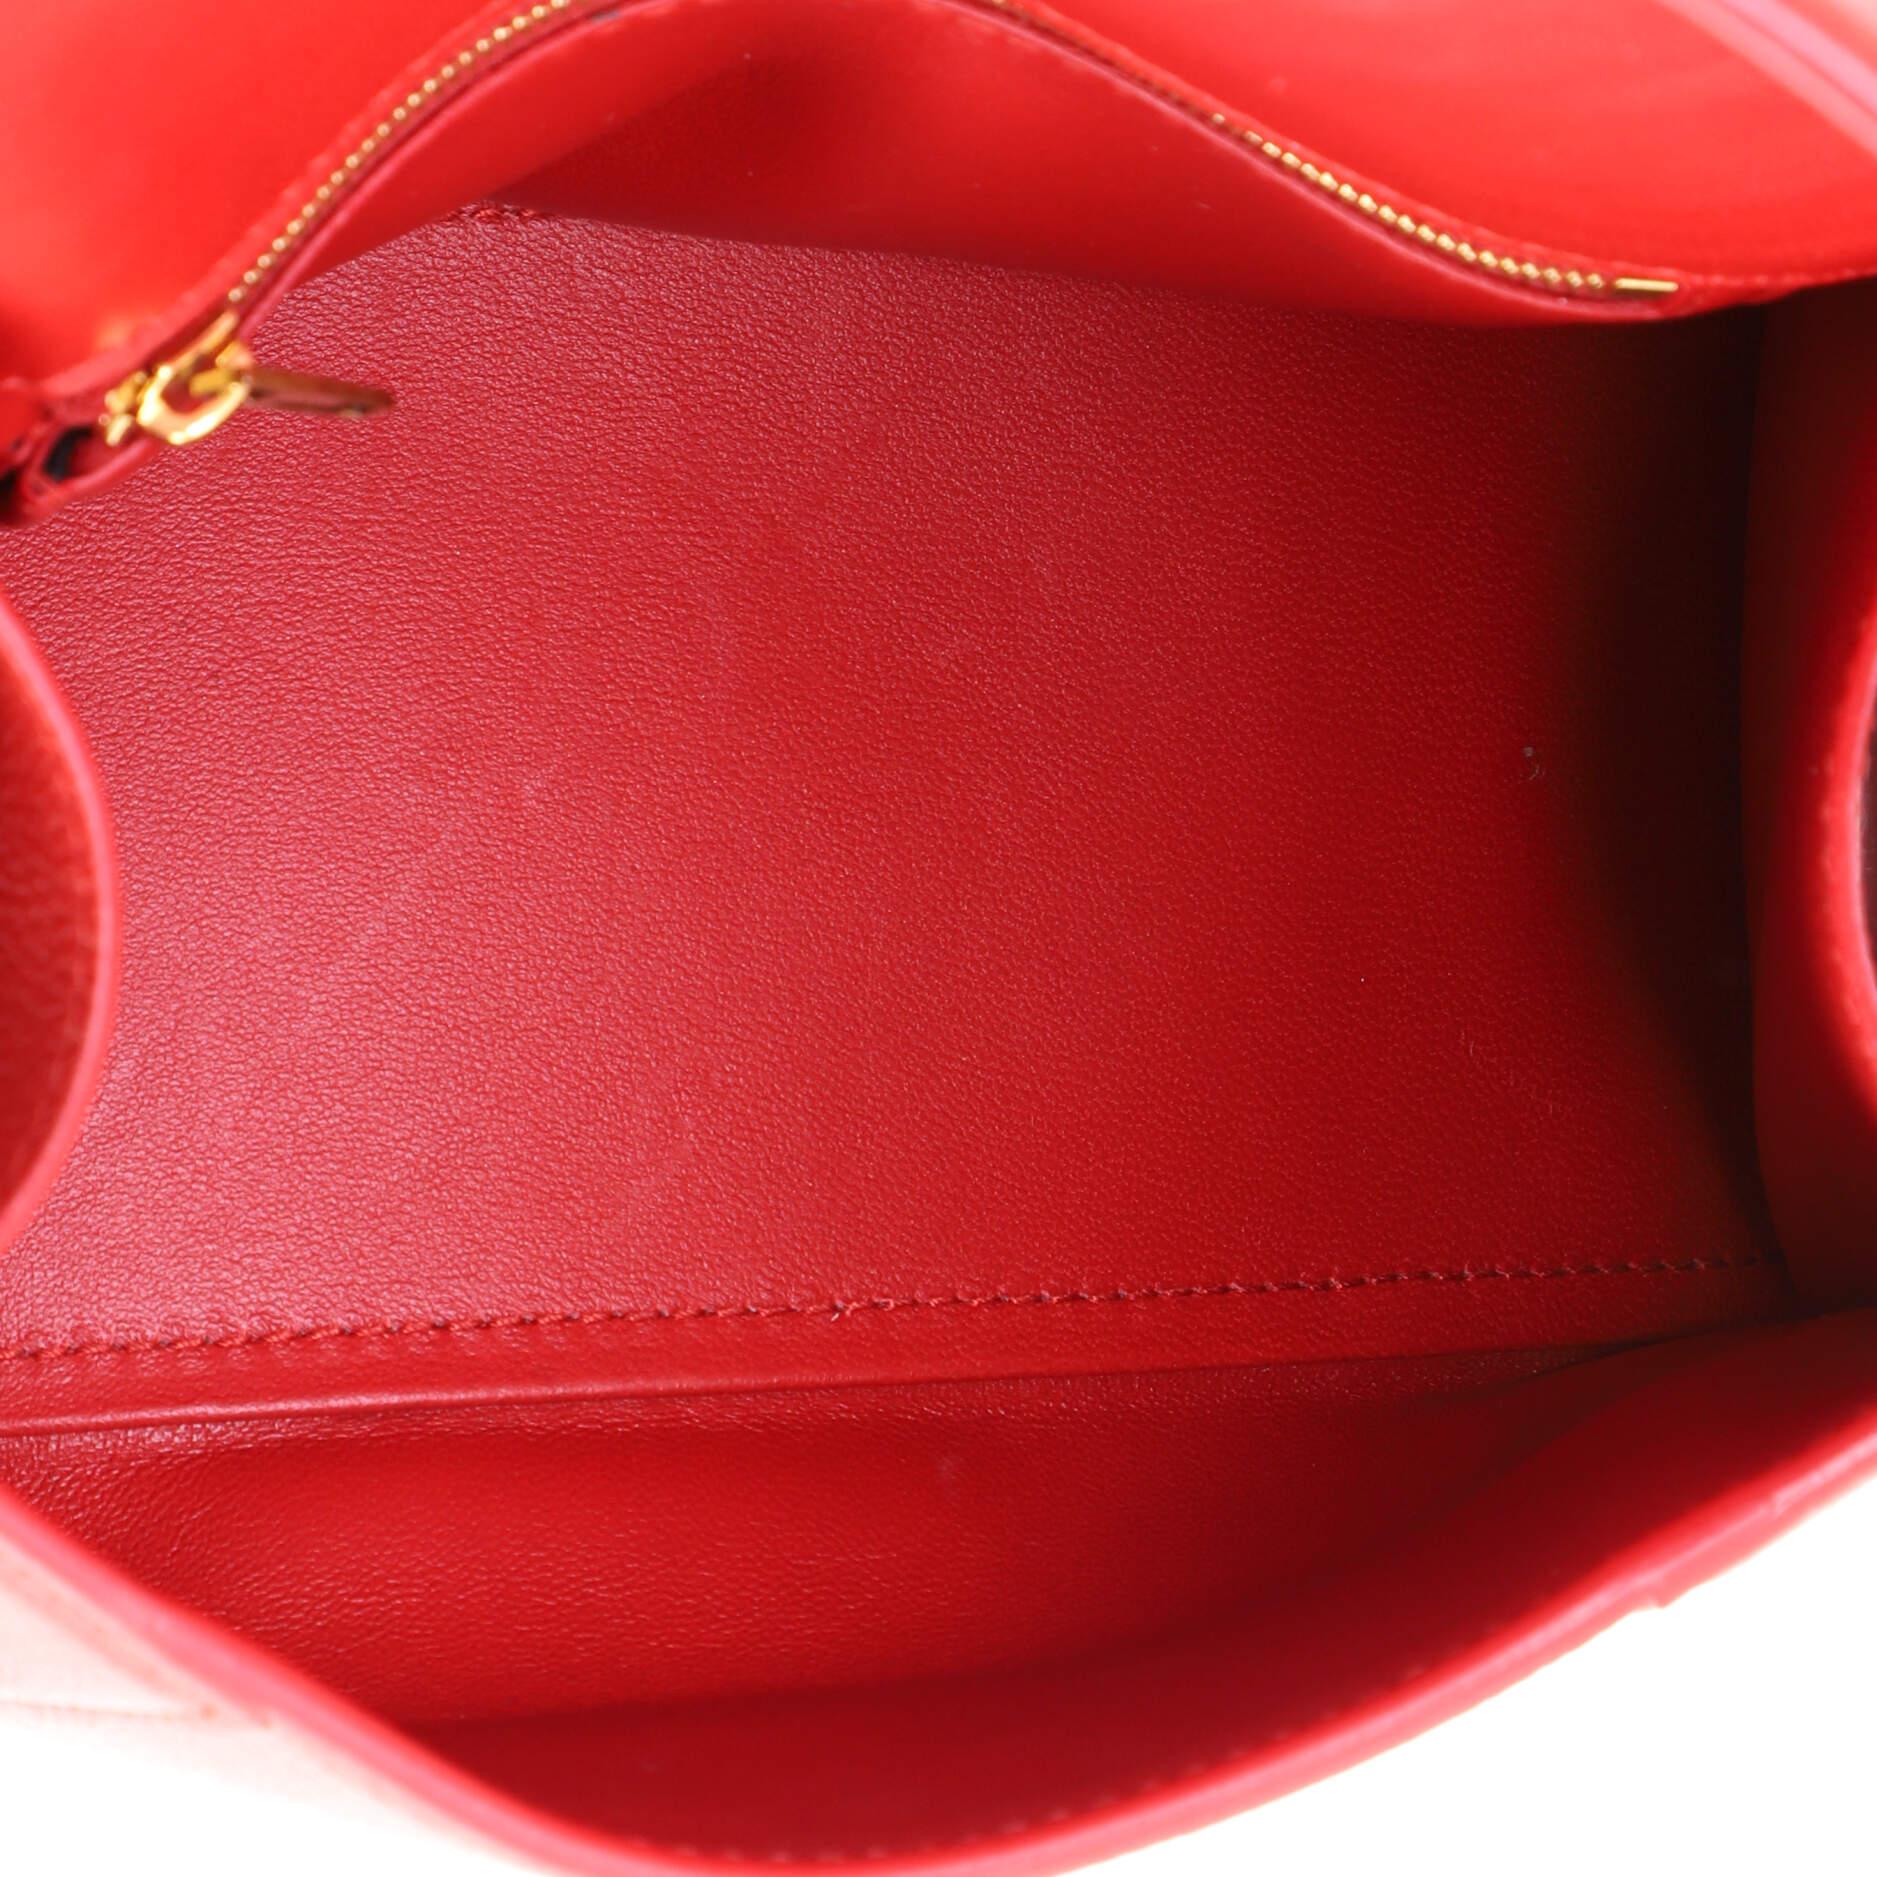 Balenciaga Hourglass Top Handle Bag Leather Small 2